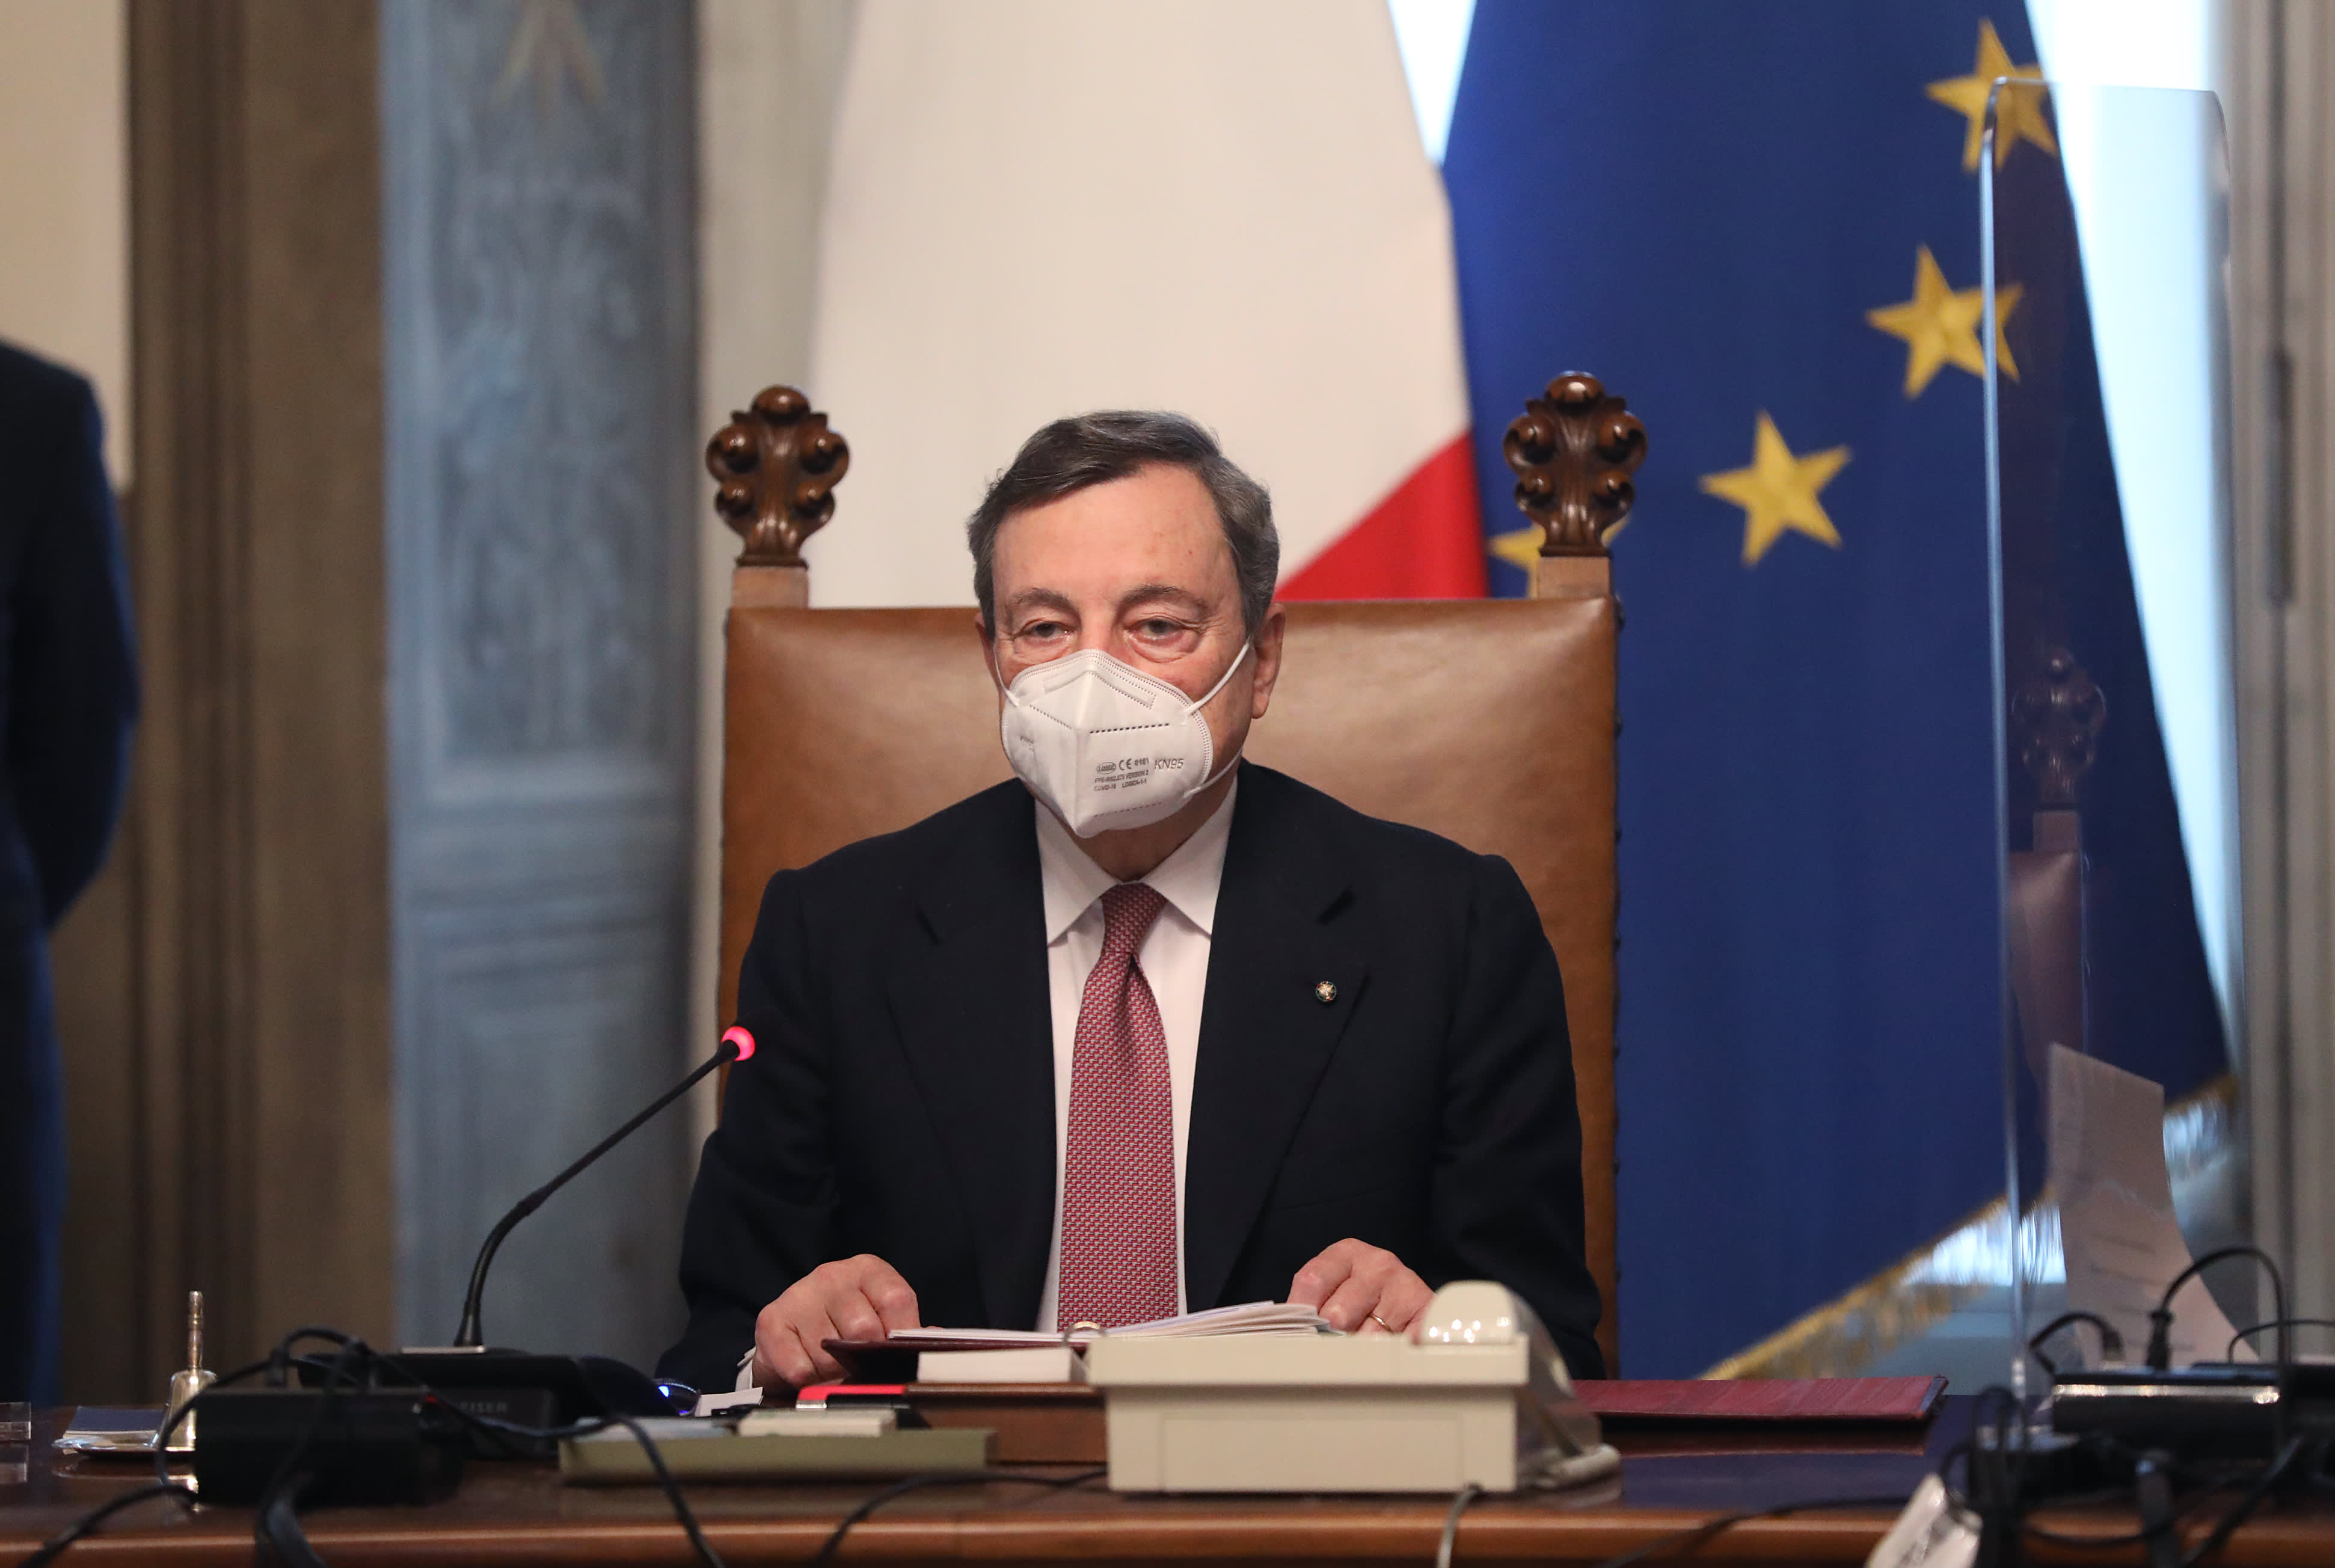 Mario Draghi presents new Italian office after EU funds revolt